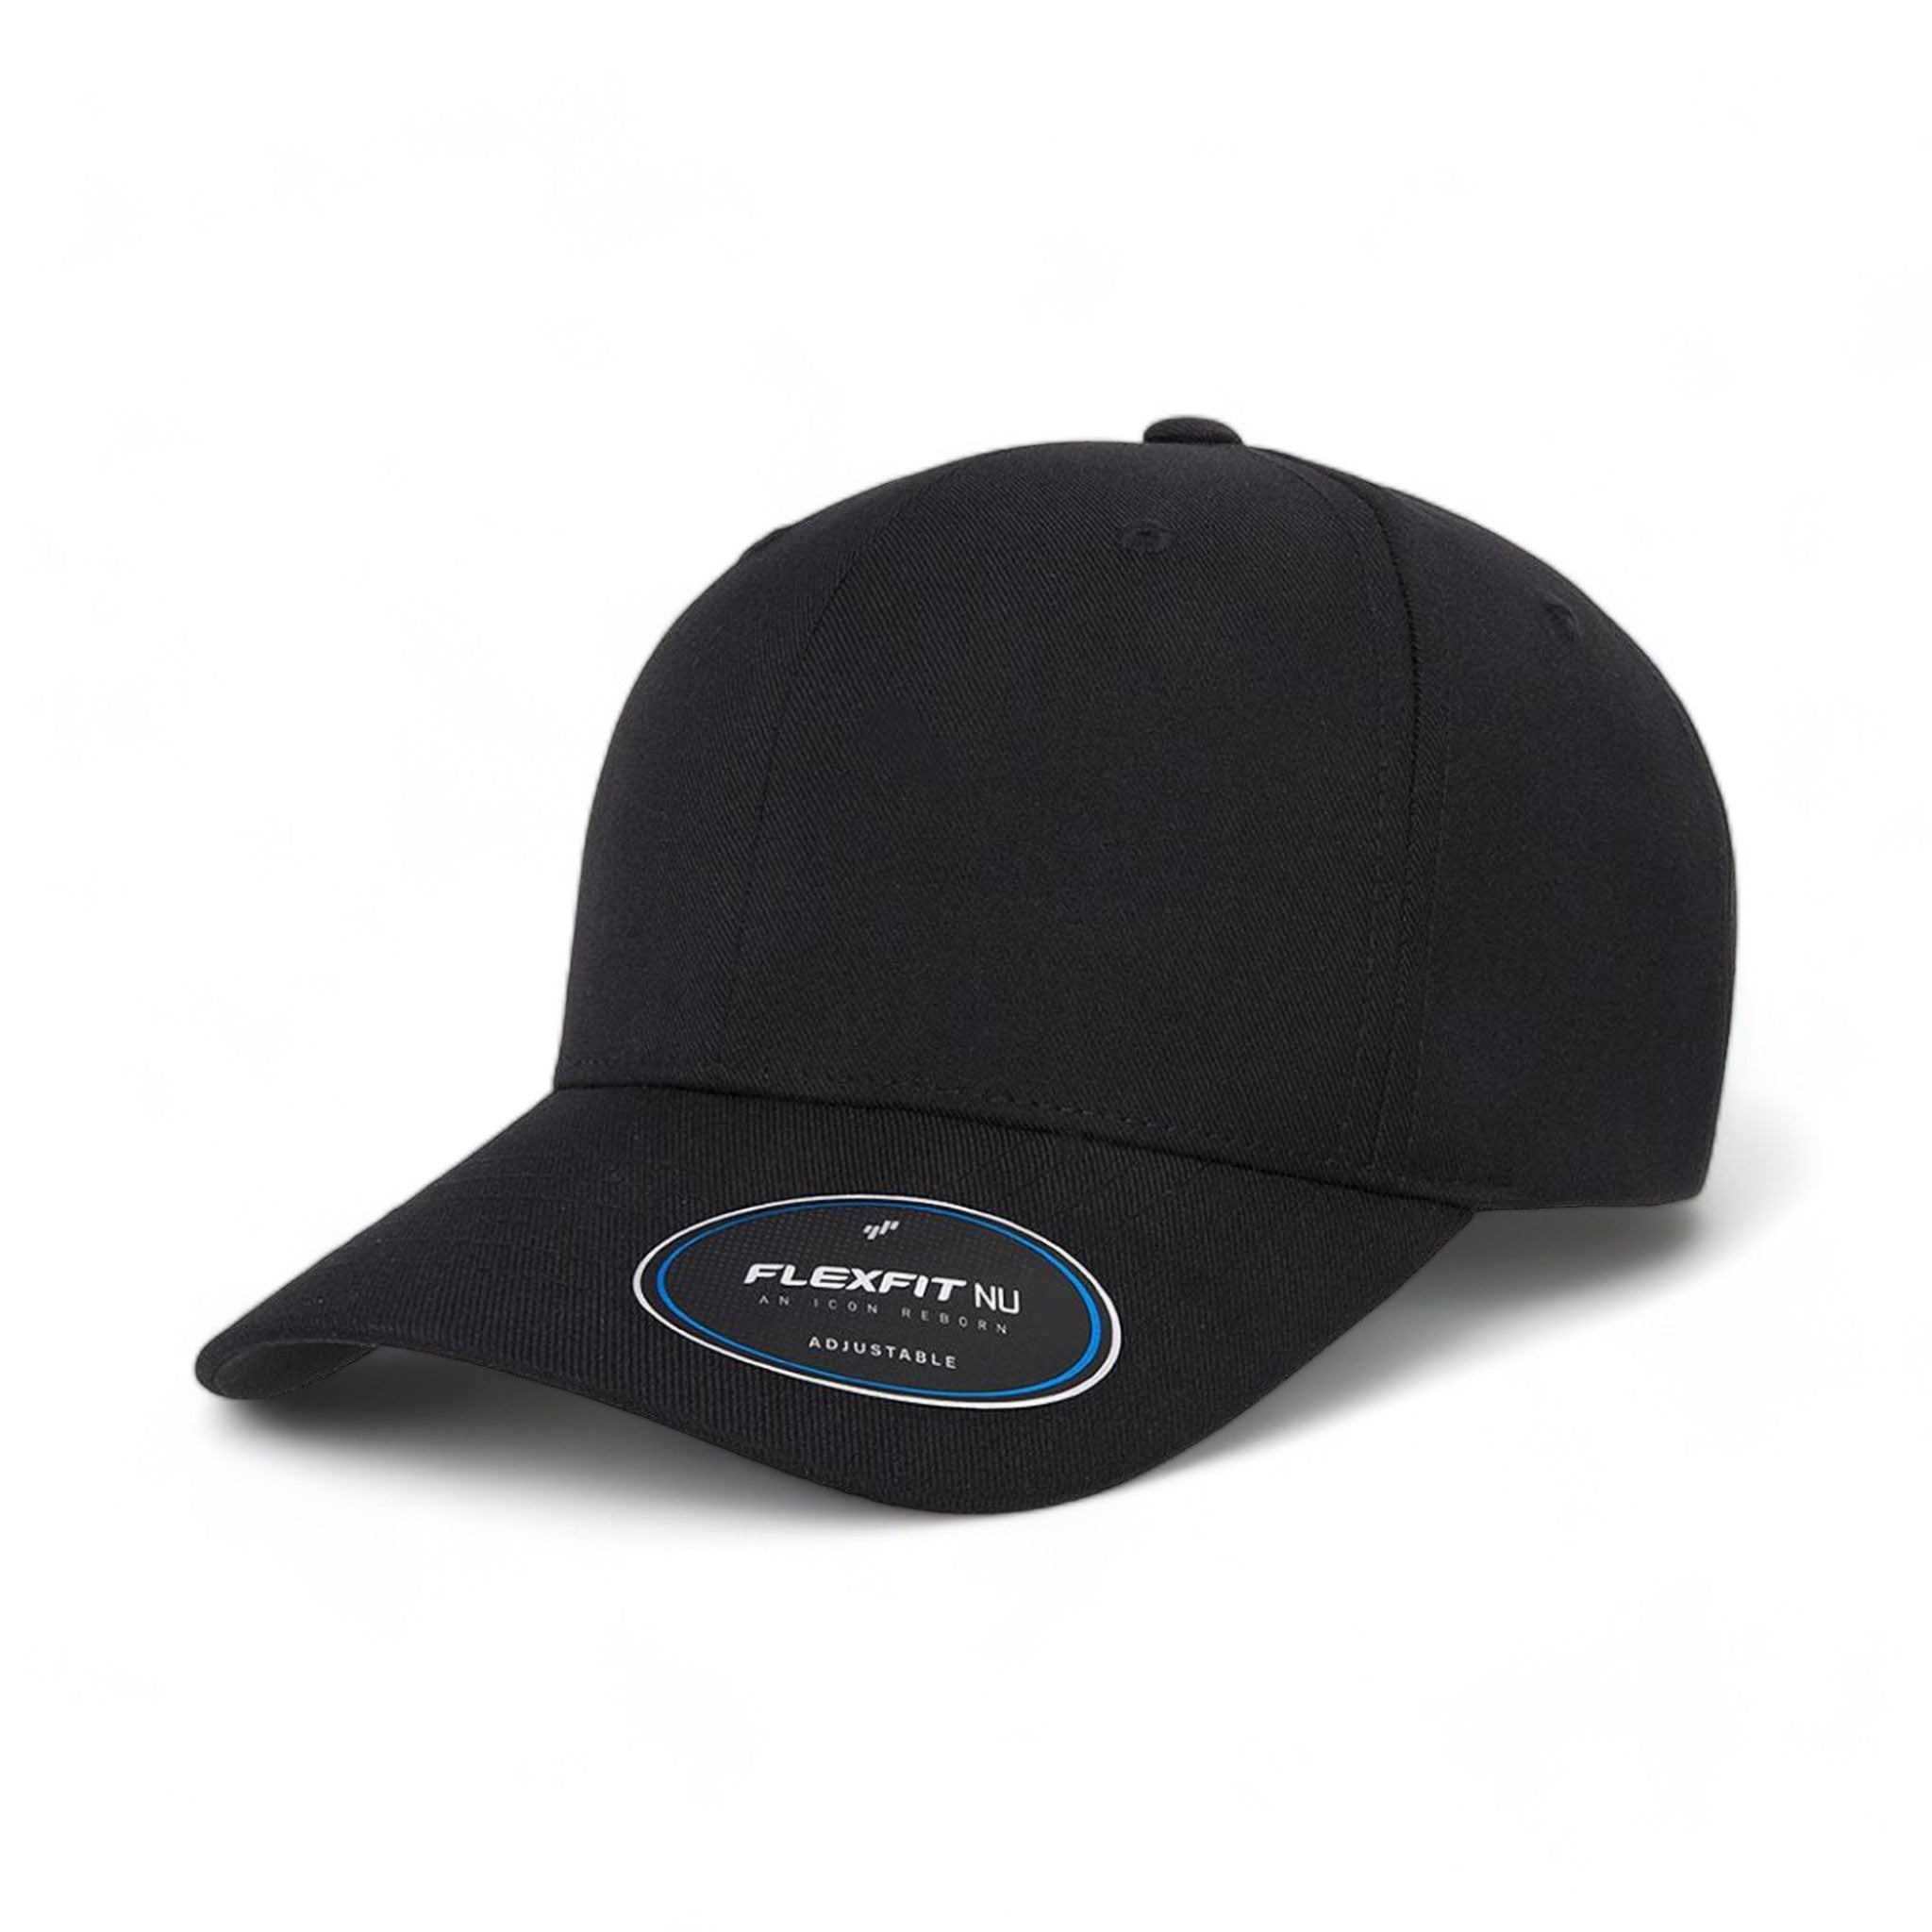 Side view of Flexfit 6110NU custom hat in black